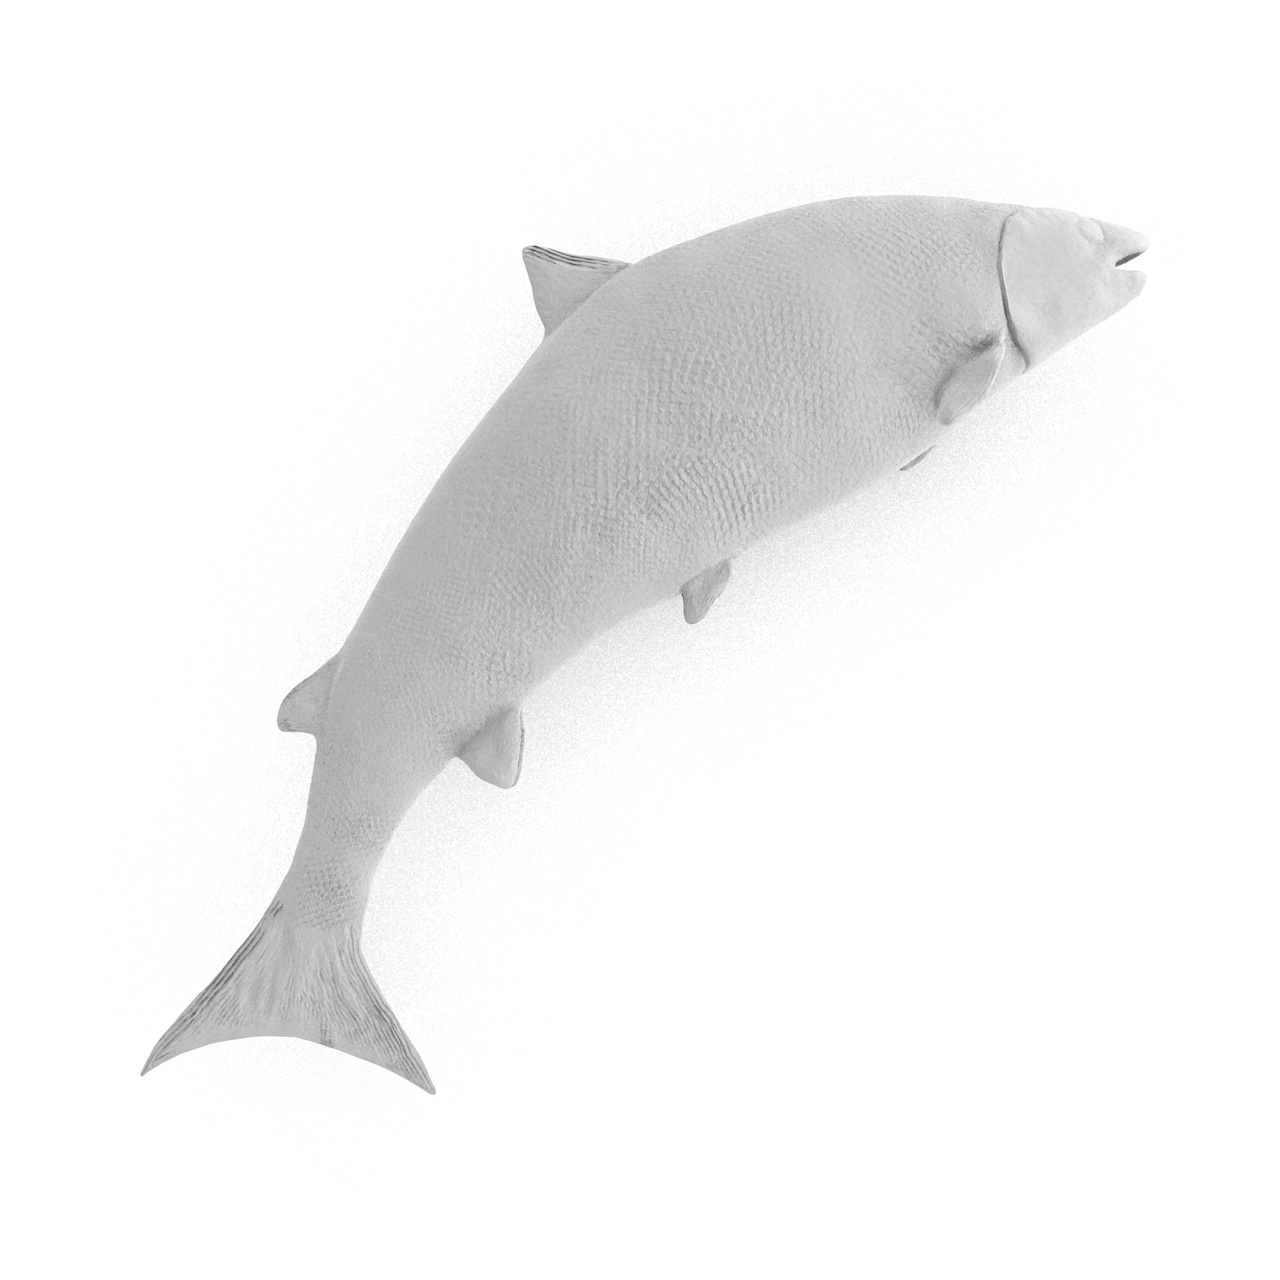 3Д модел штампе великог тихог лососа Онцорхинцхус кета